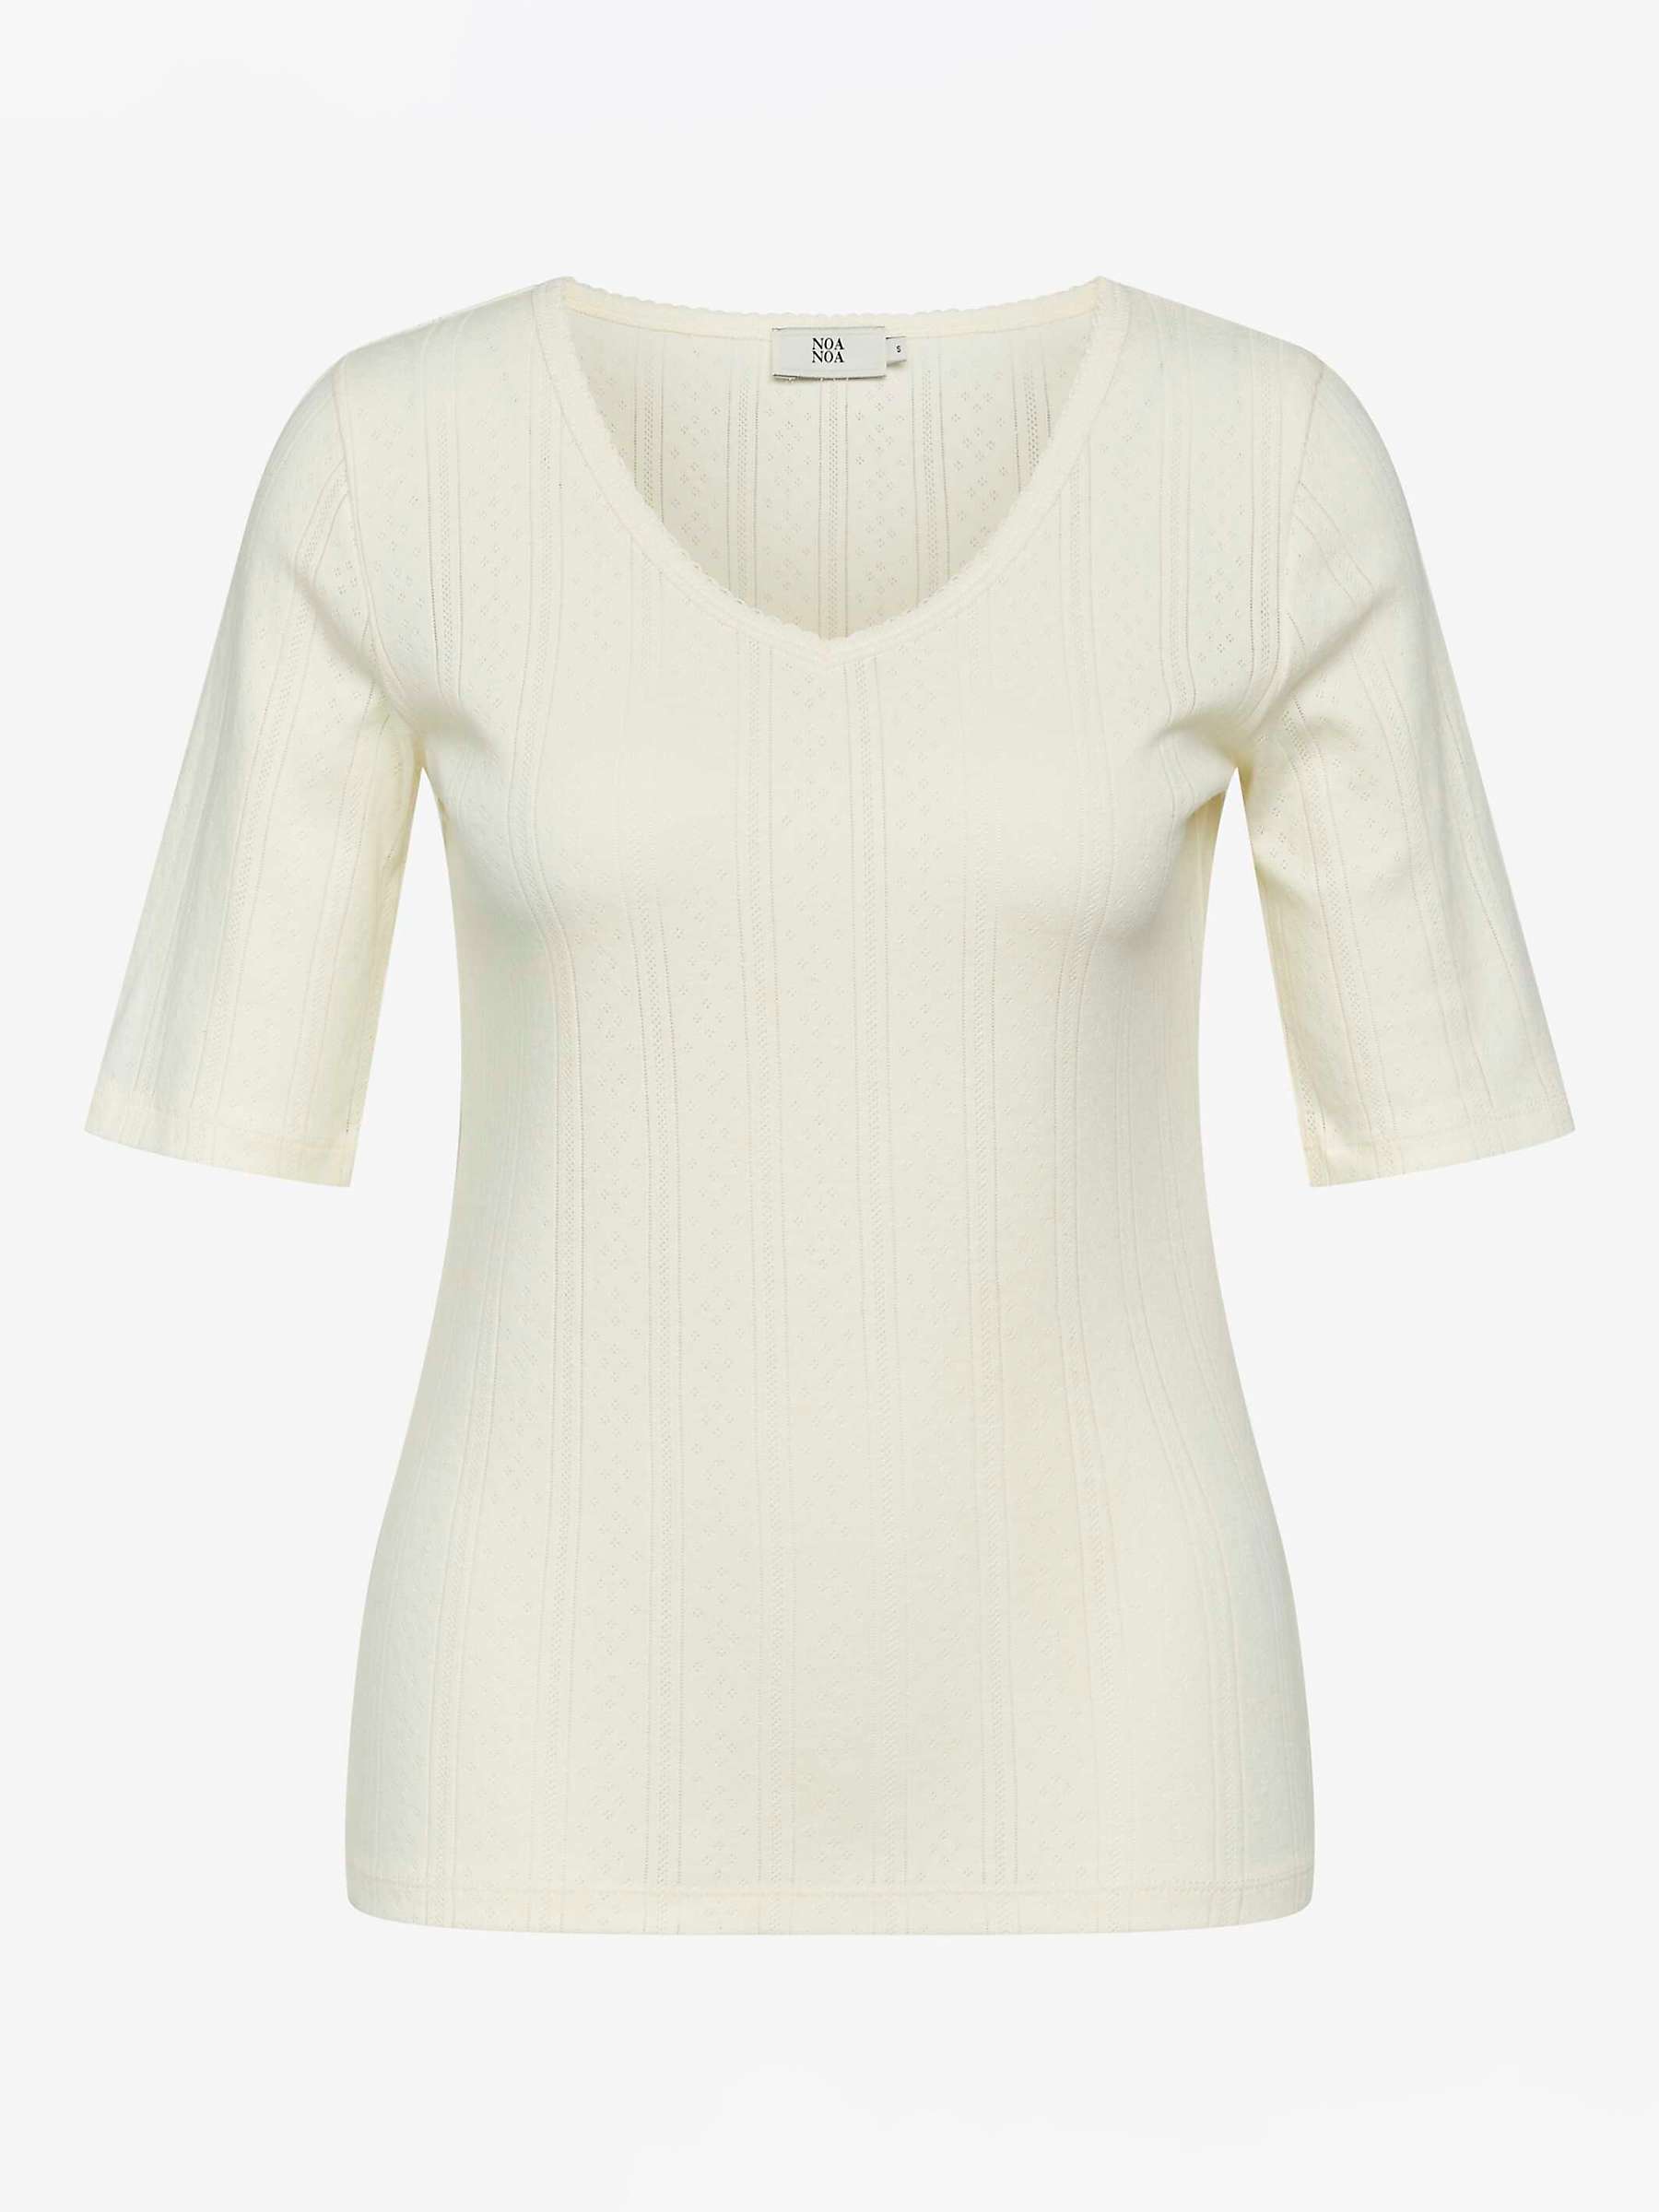 Noa Noa Mindy Pointelle Organic Cotton Elbow Sleeve T-Shirt, White at ...